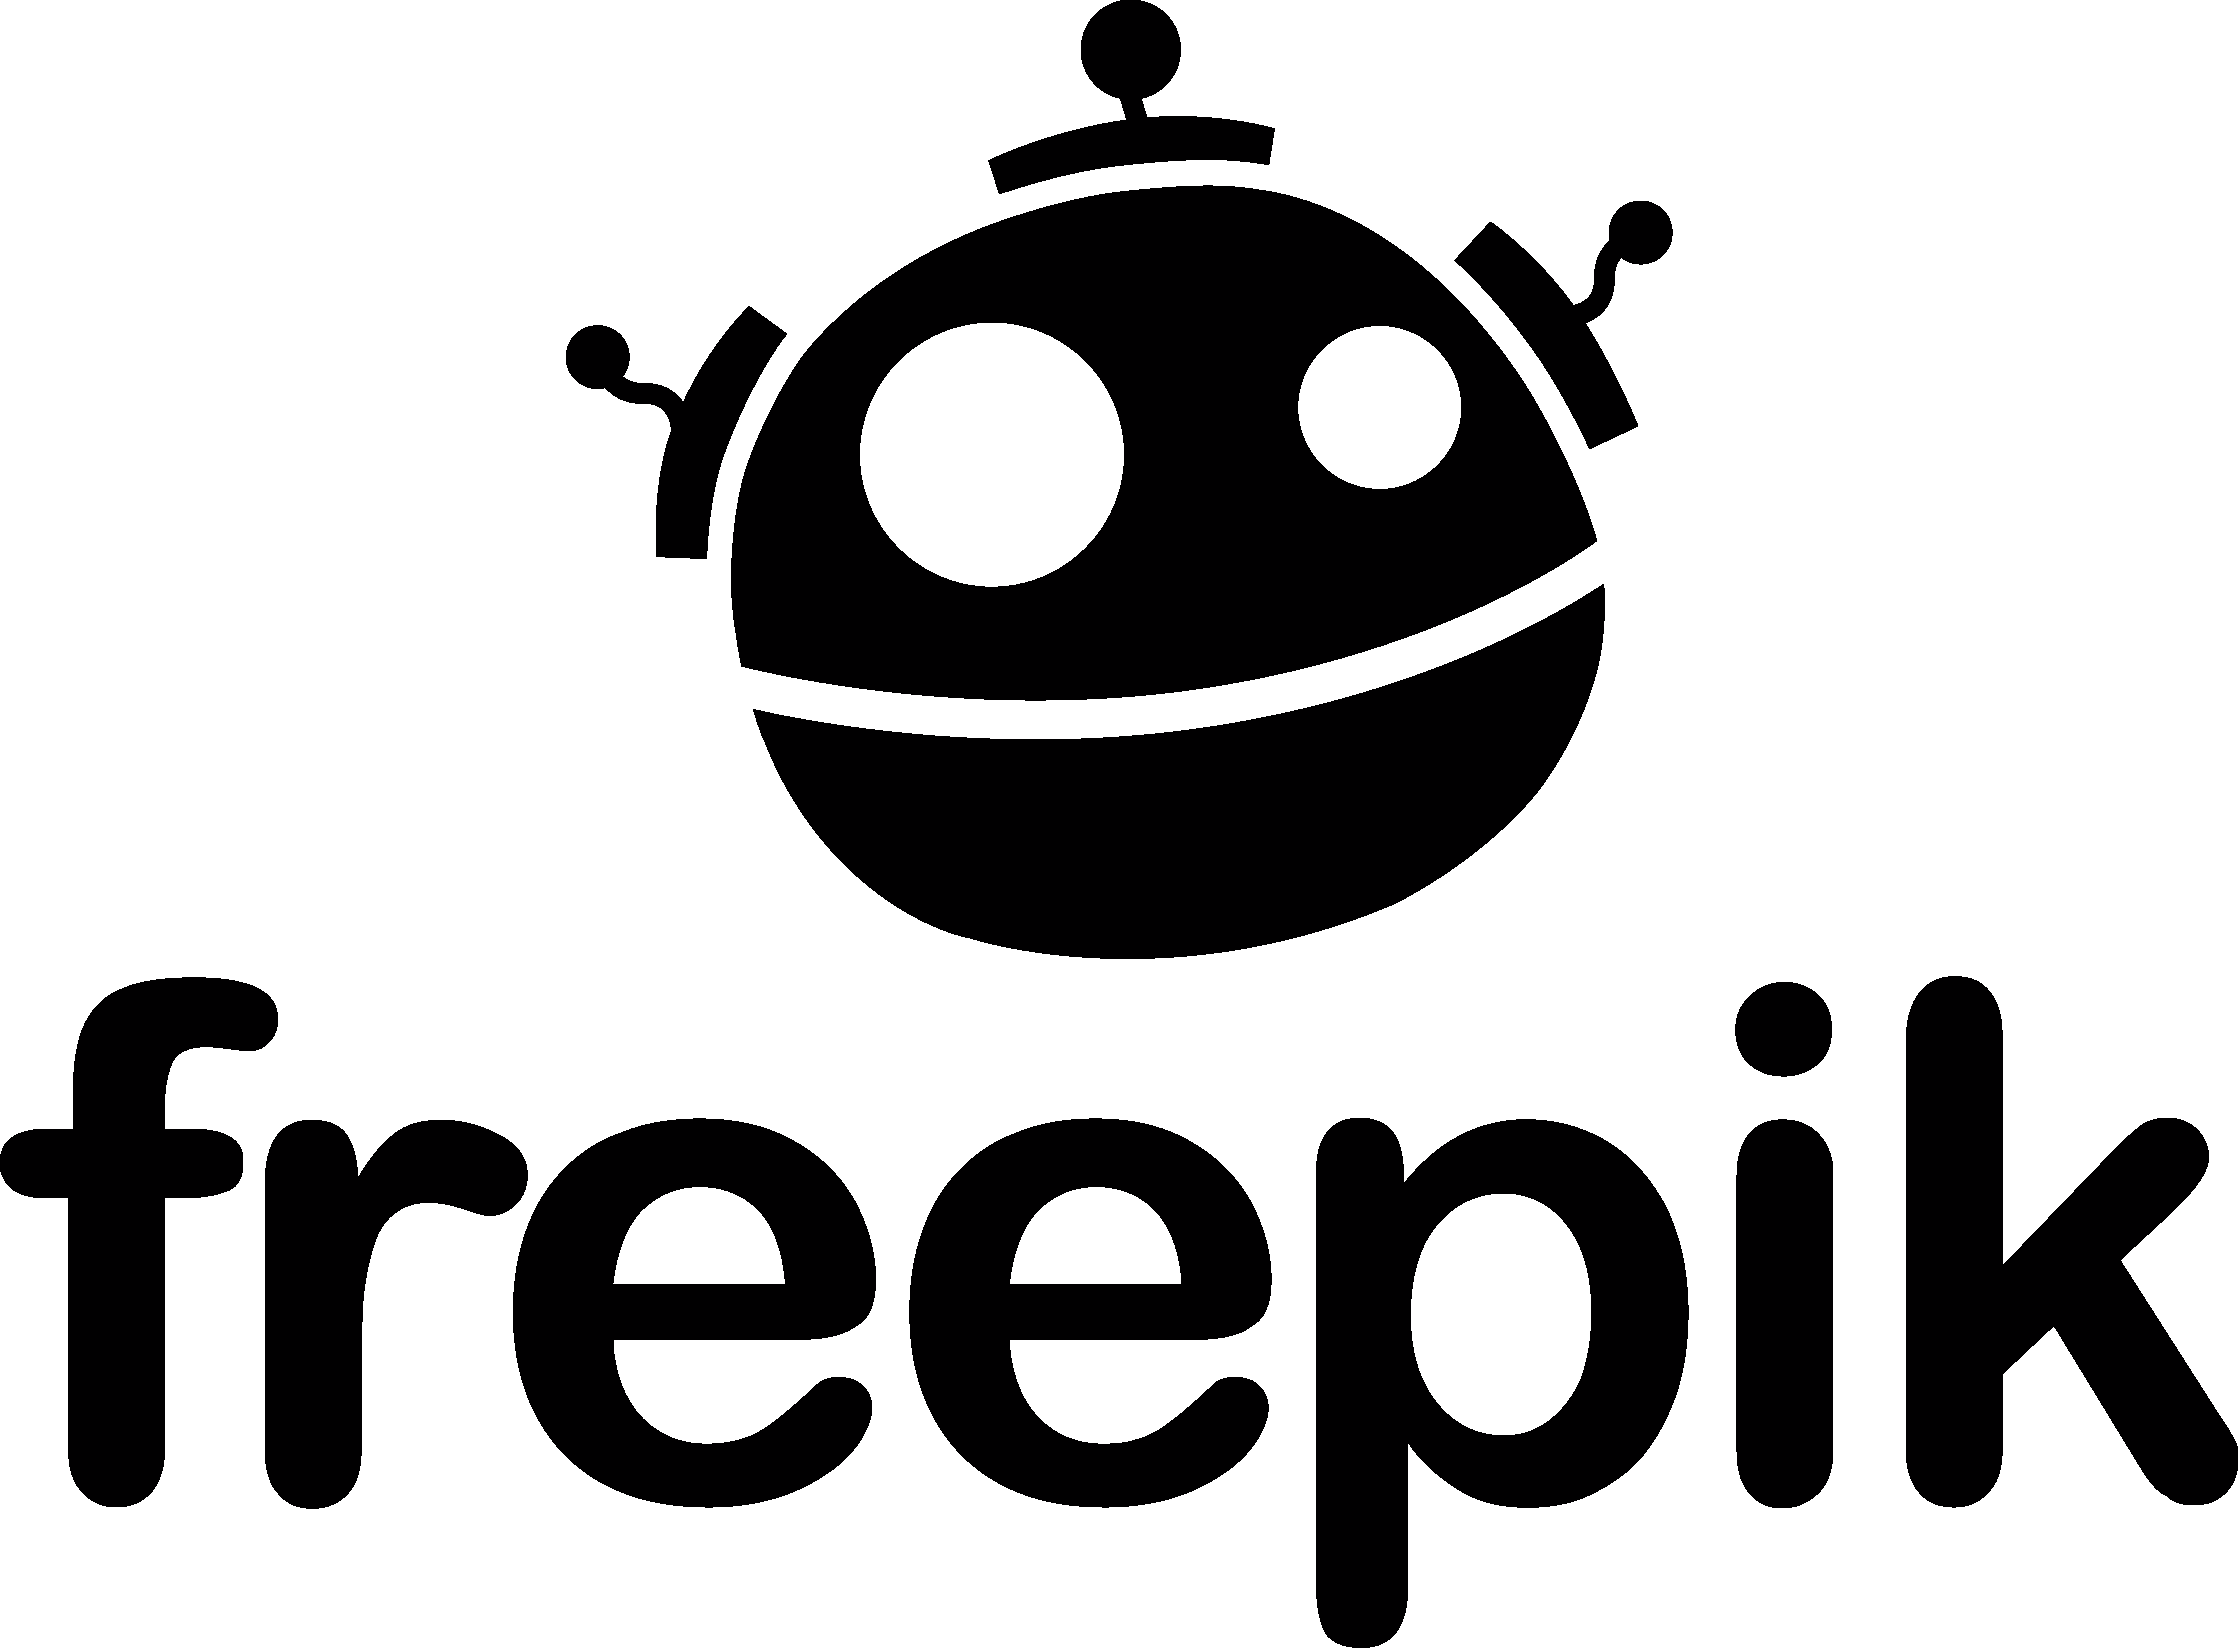 Freepik Logo png